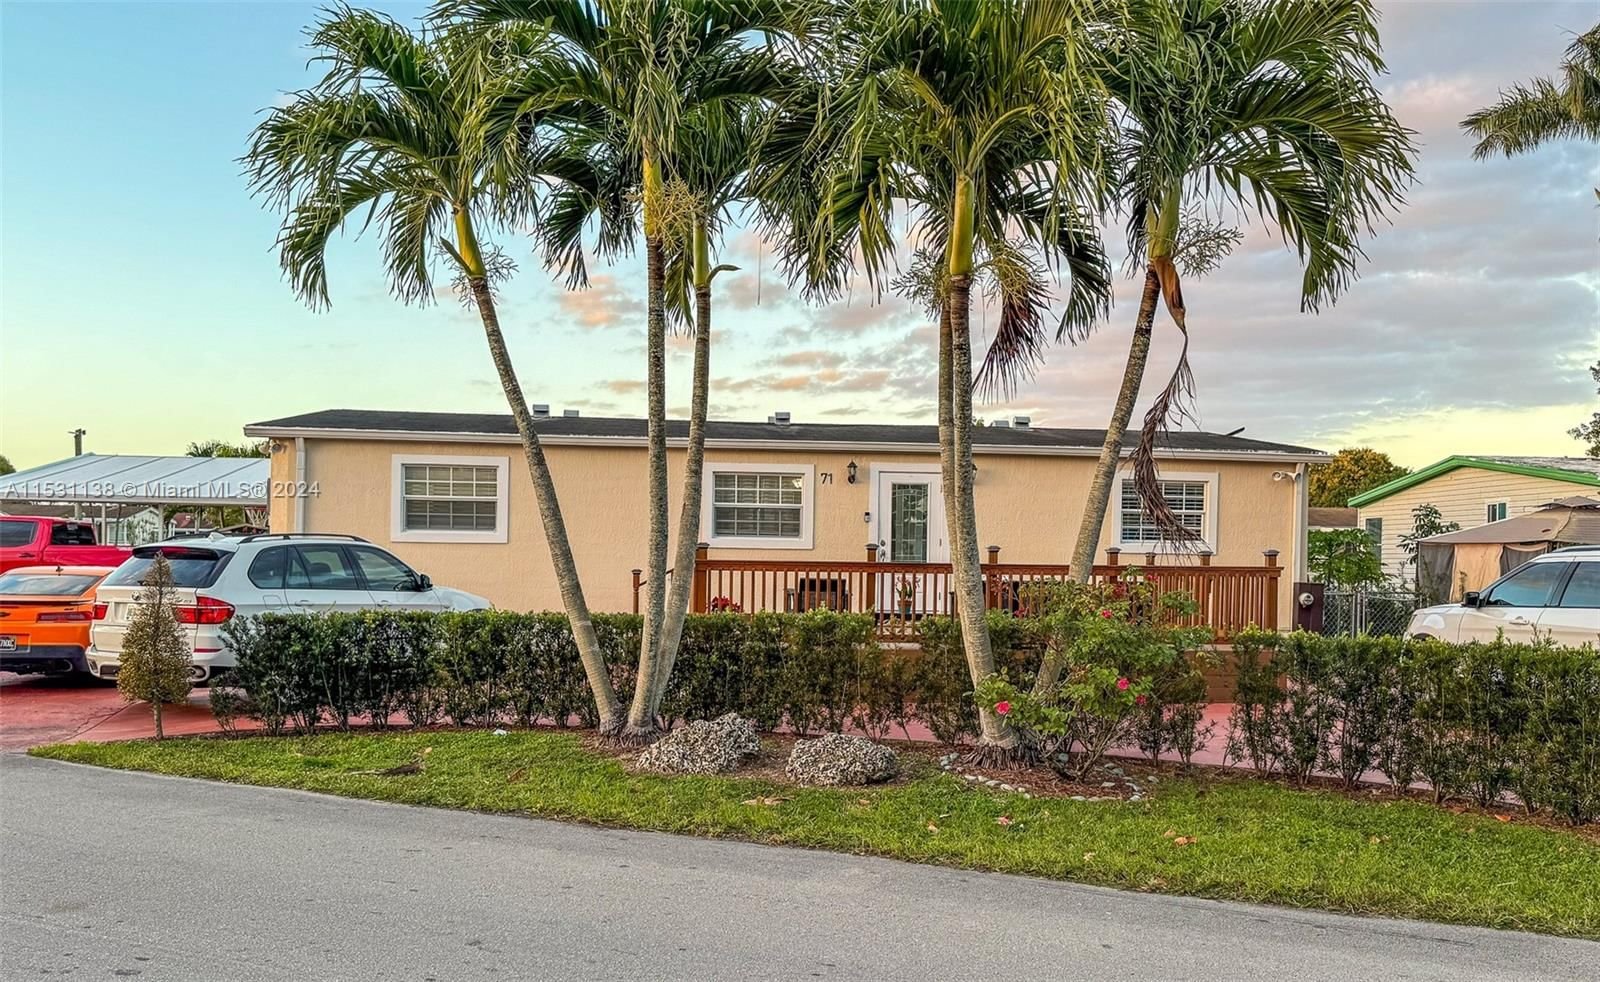 Real estate property located at 19800 180th Ave 71, Miami-Dade County, AMERICANA VILLAGE CONDO, Miami, FL